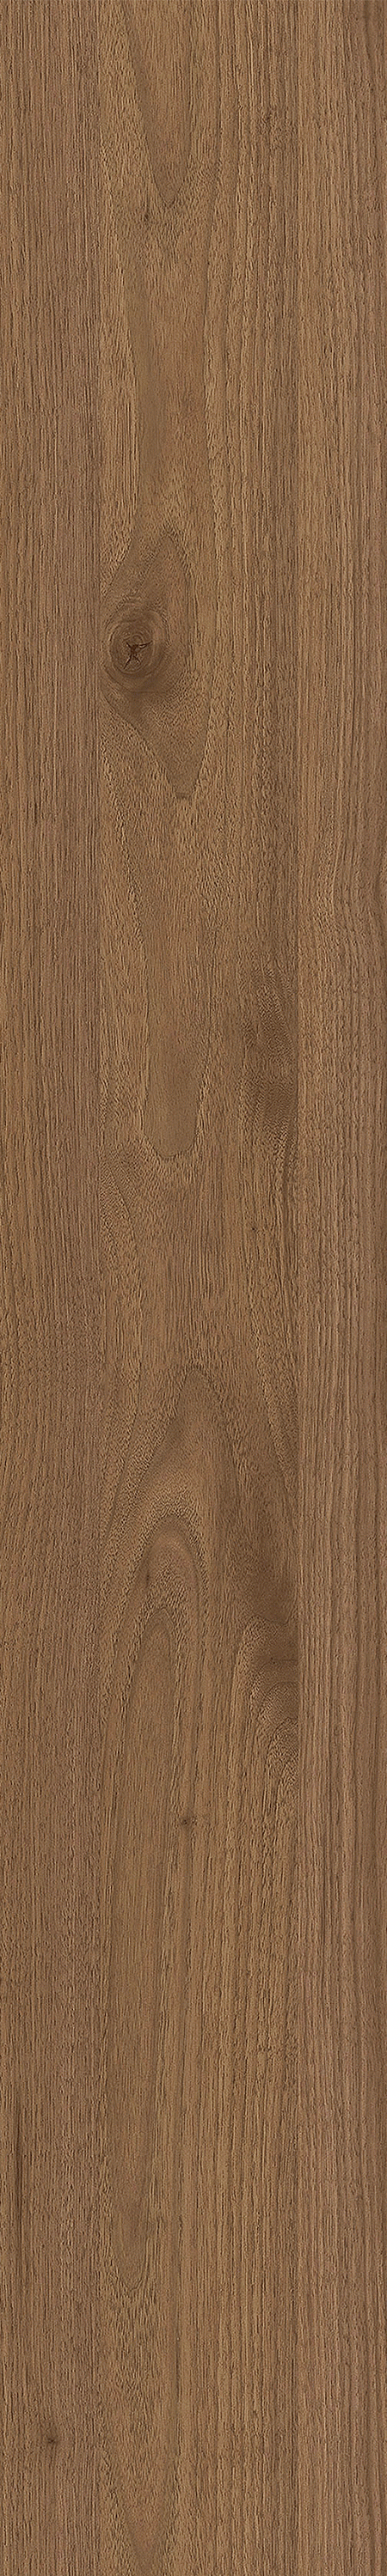 Spc-плитка Creto Напольное покрытие SPC EcoWood Дуб натуральный Карелия Светлый 1220х183х5мм - изображение 3